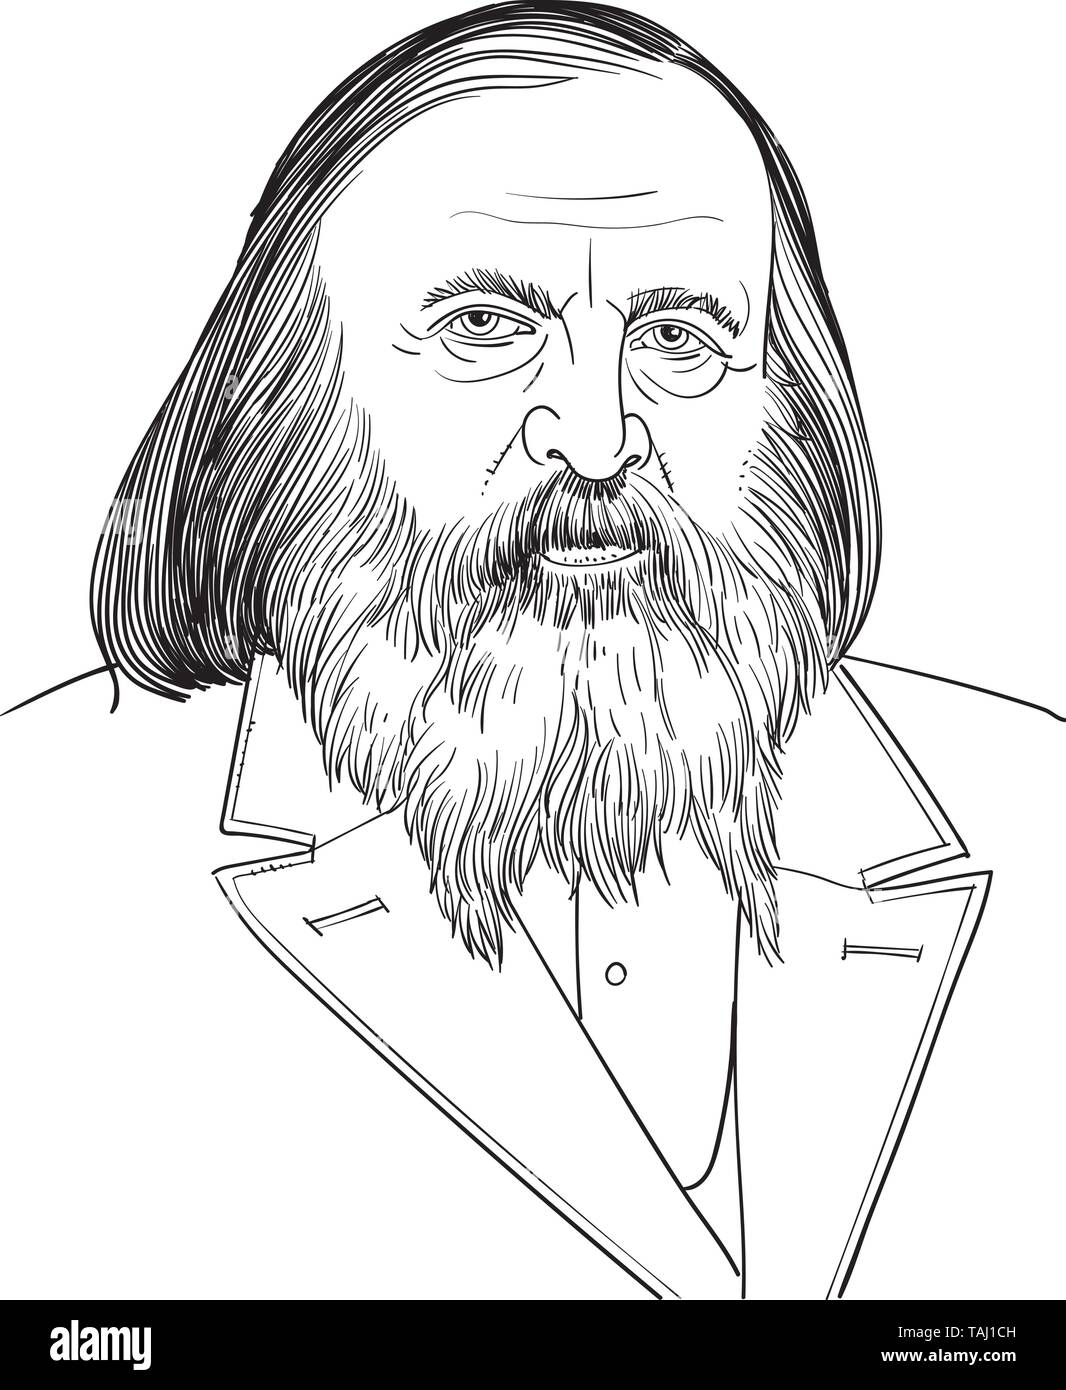 Dmitri Mendeleev (1834-1907) ritratto in linea tecnica illustrazione. Egli fu un chimico russo che ha sviluppato la classificazione periodica degli elementi. Illustrazione Vettoriale